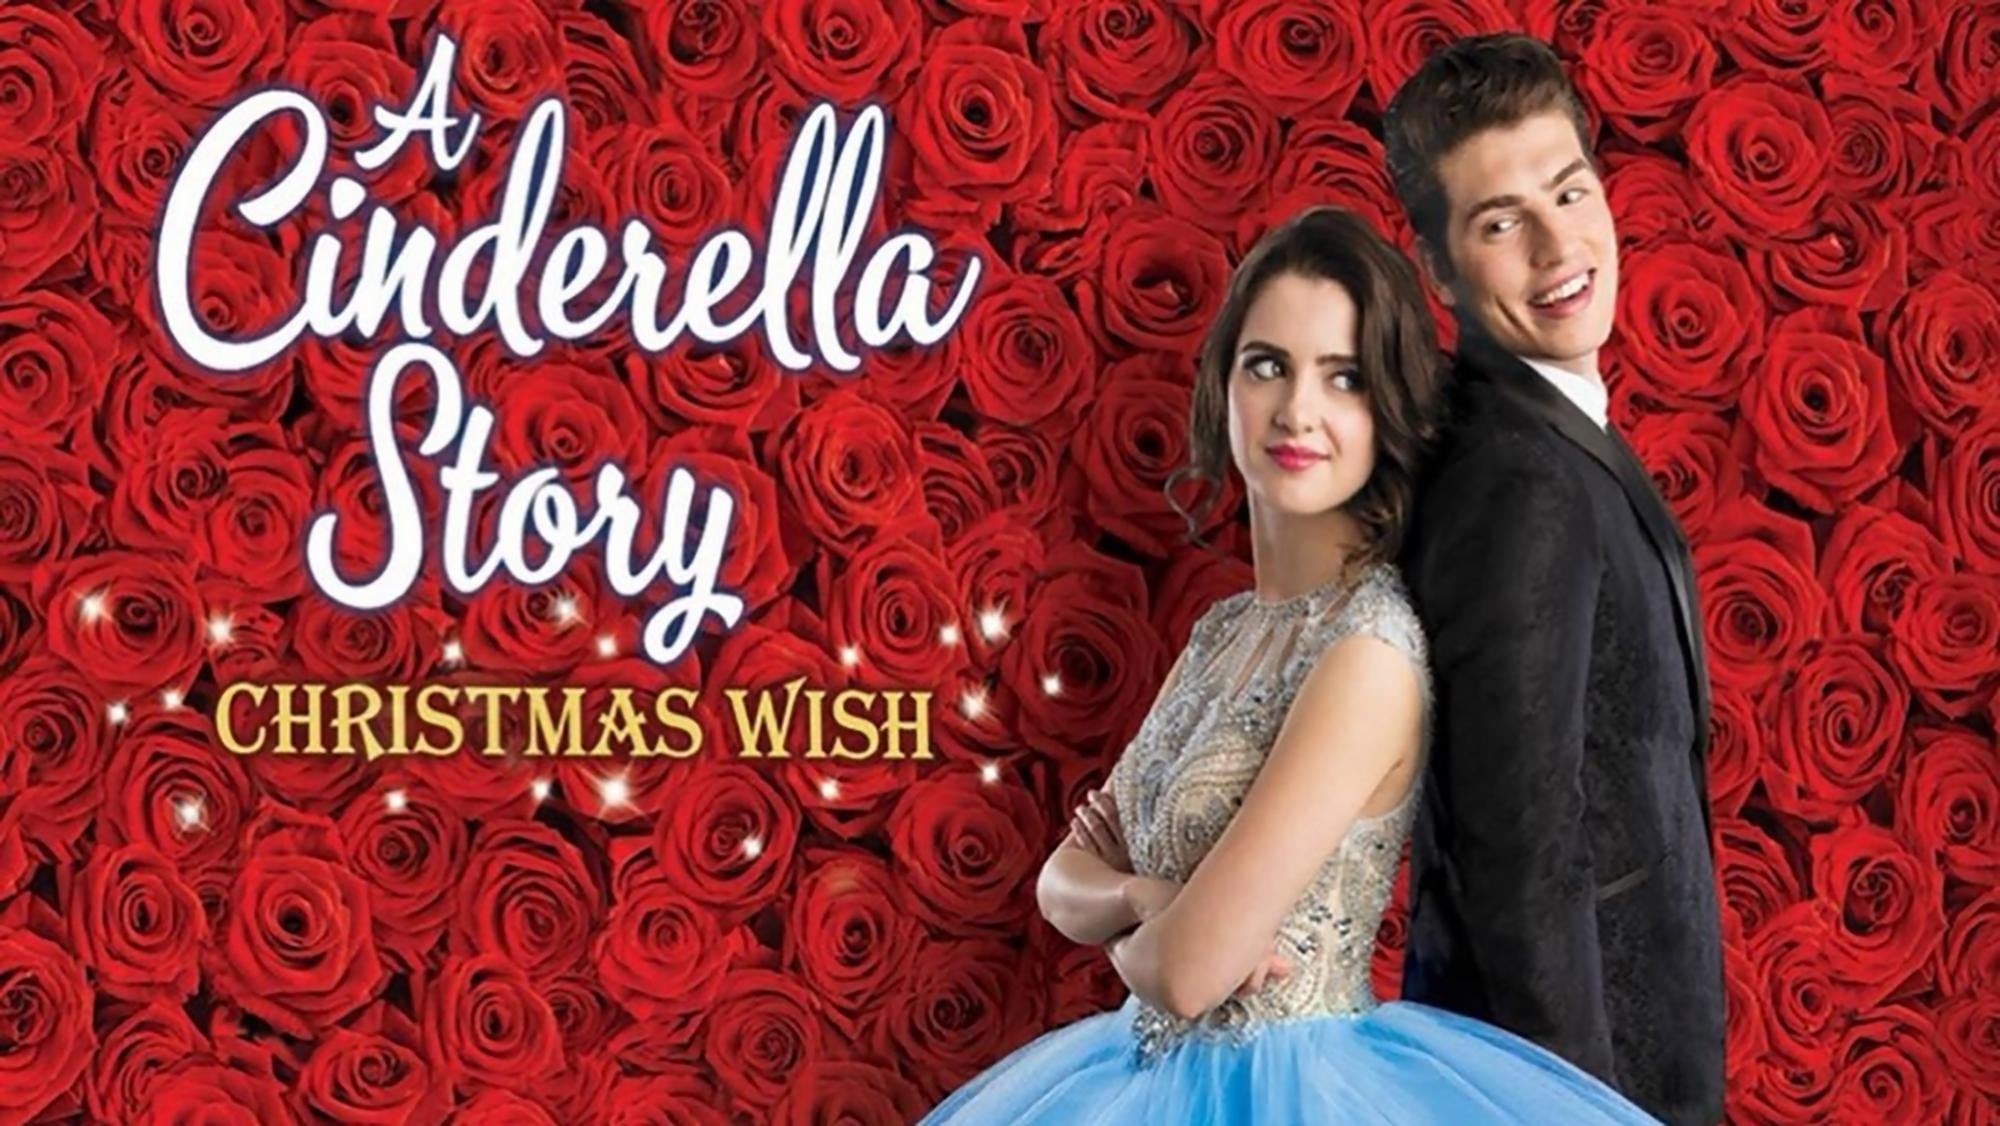 Cinderella Story - Ein Weihnachtswunsch